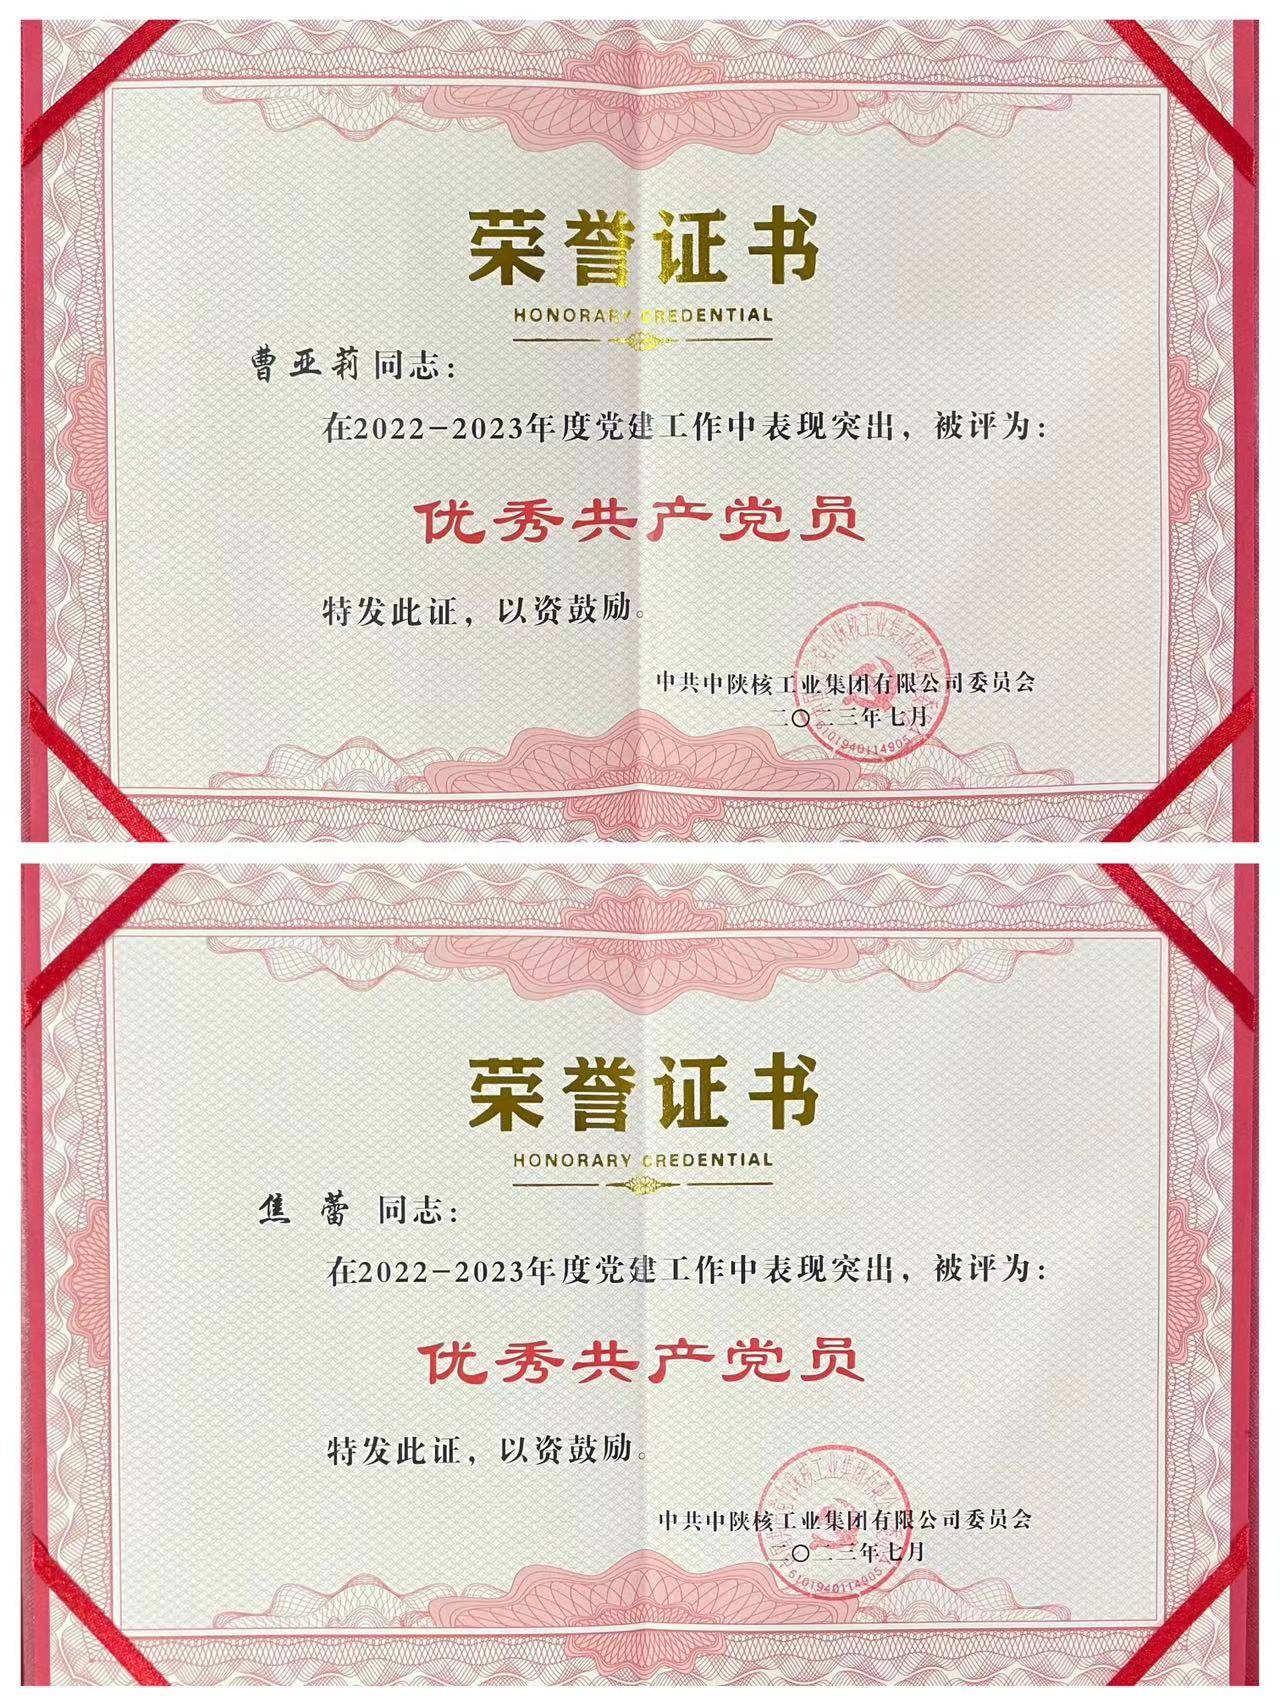 喜报！宜威公司曹亚莉、焦蕾同志荣获中陕核集团“优秀共产党员”称号